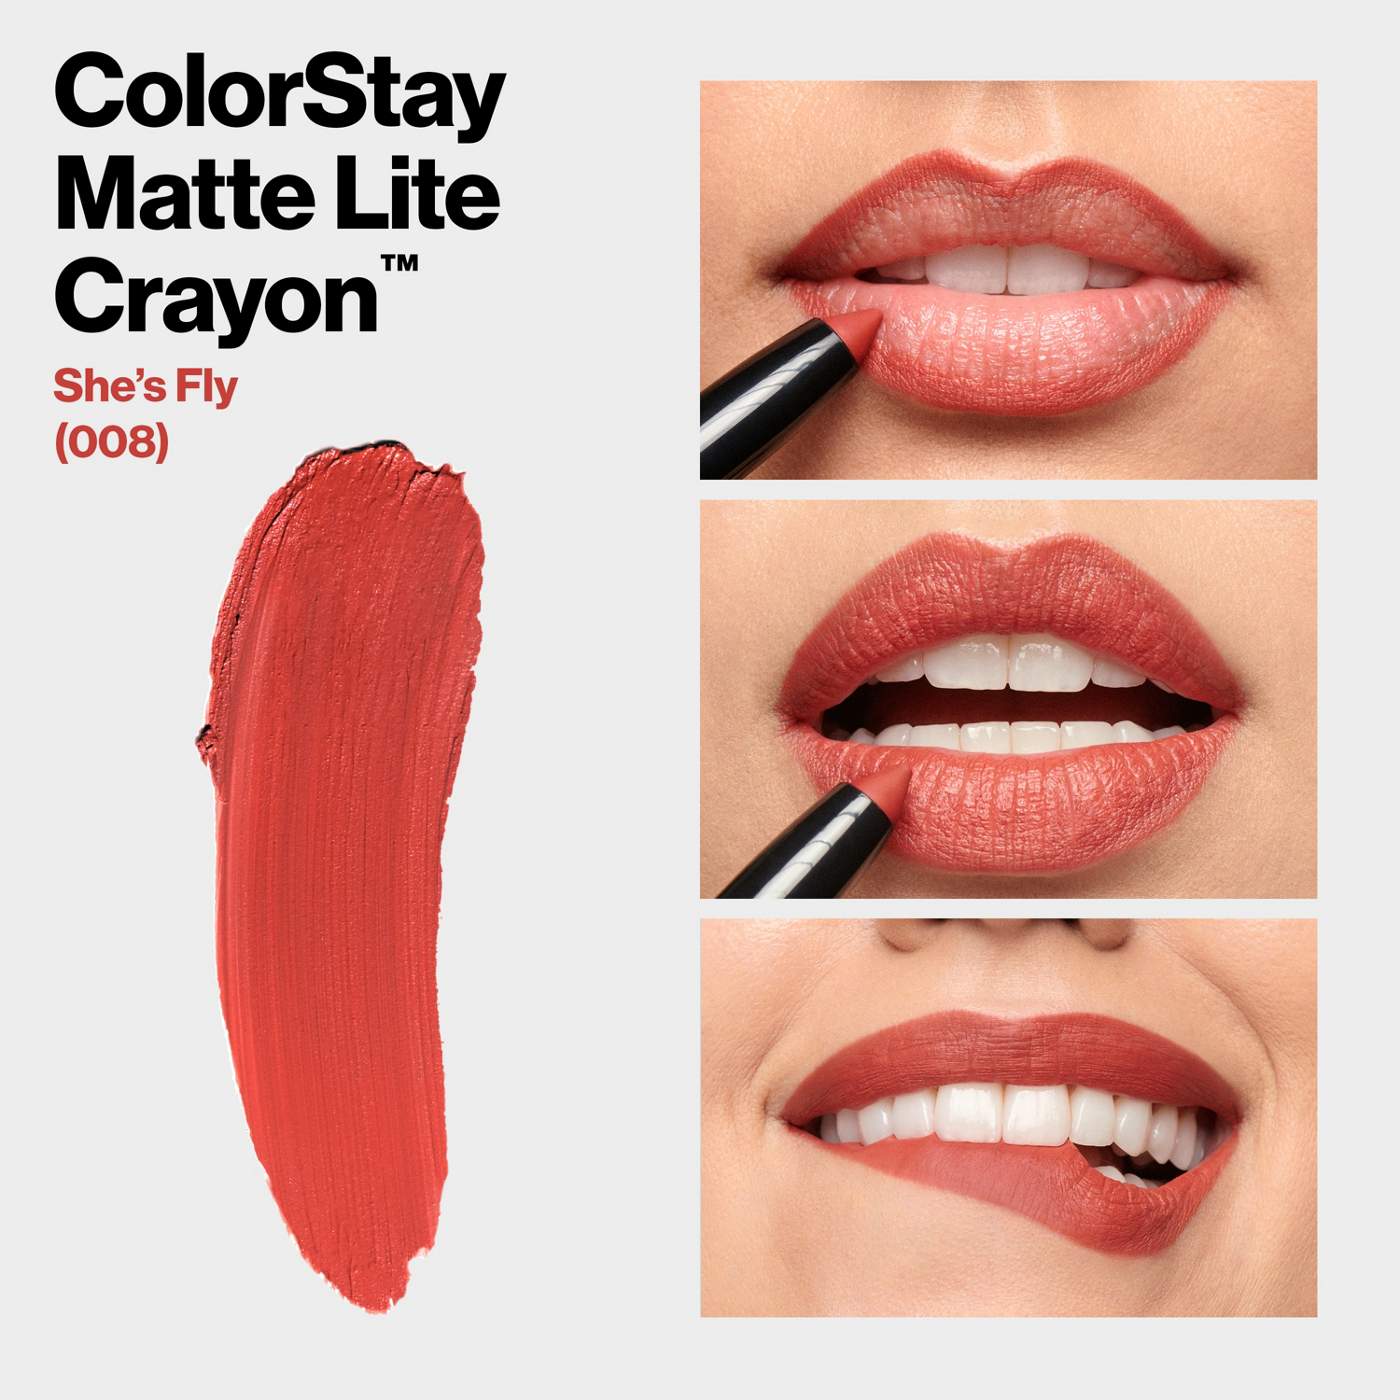 Revlon ColorStay Matte Lite Crayon Lipstick - She's Fly; image 5 of 7